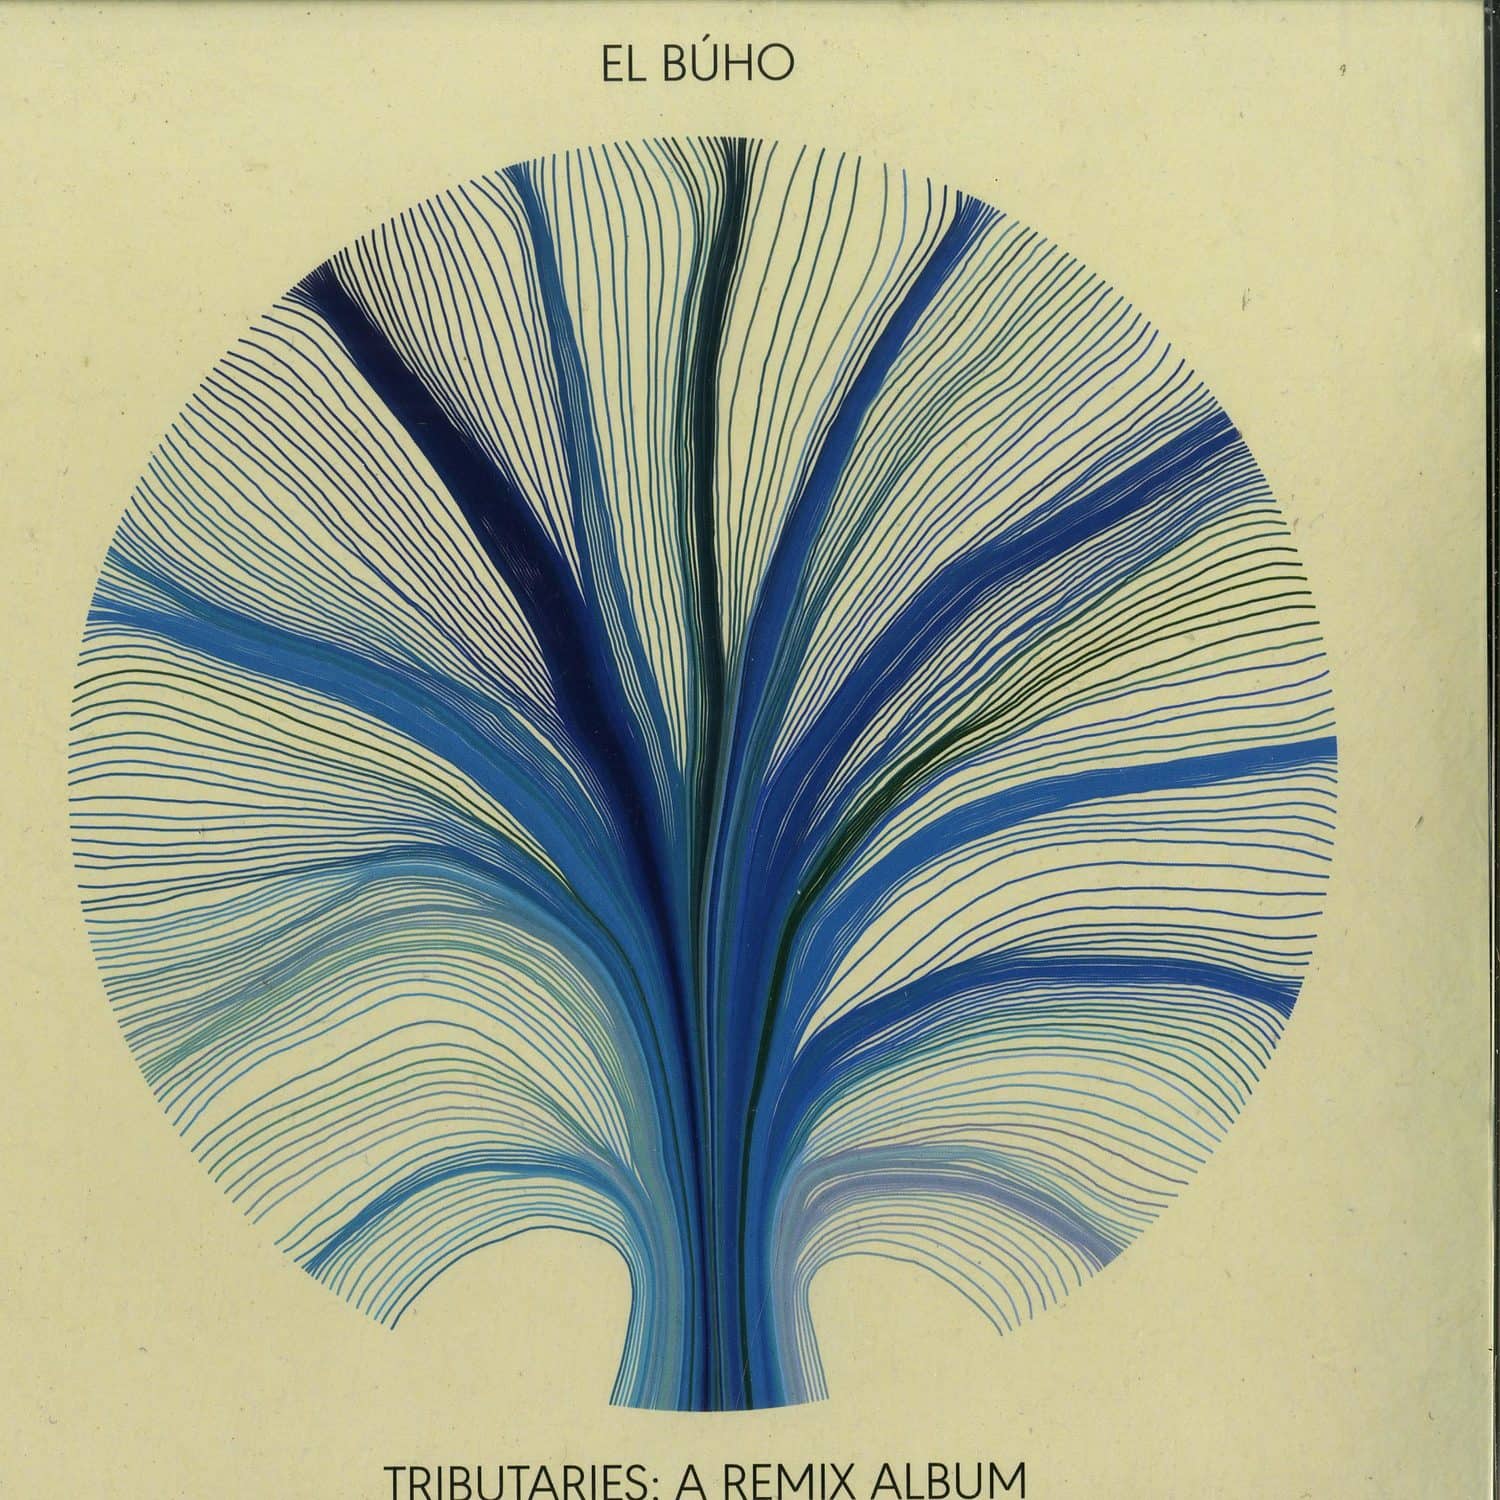 El Buho - TRIBUTARIES: A REMIX ALBUM 